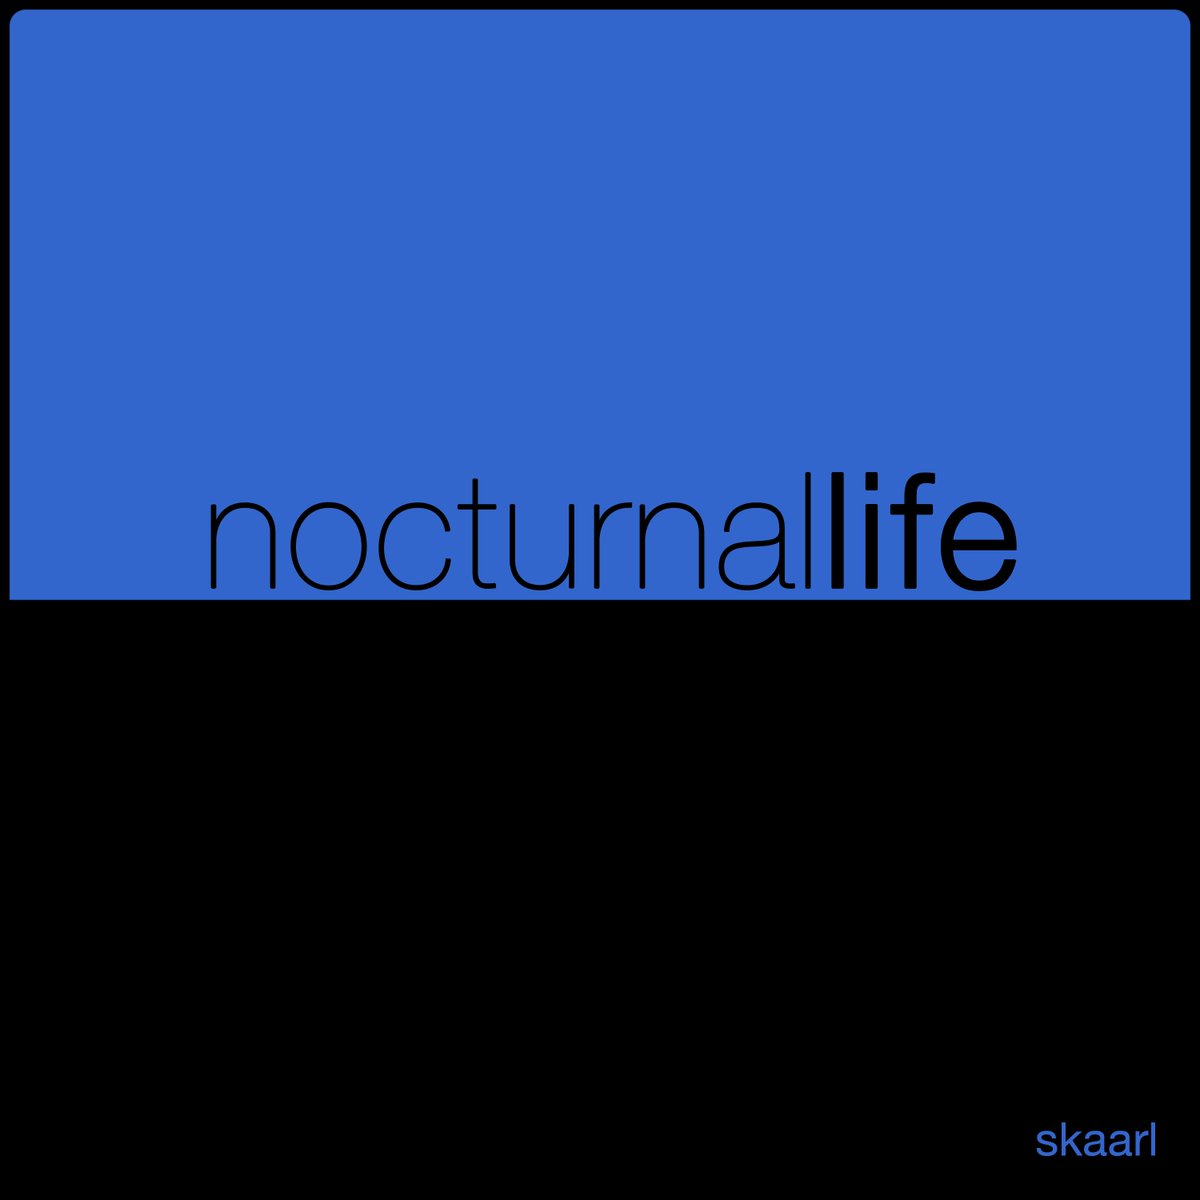 Nocturnal Life by Skaarl